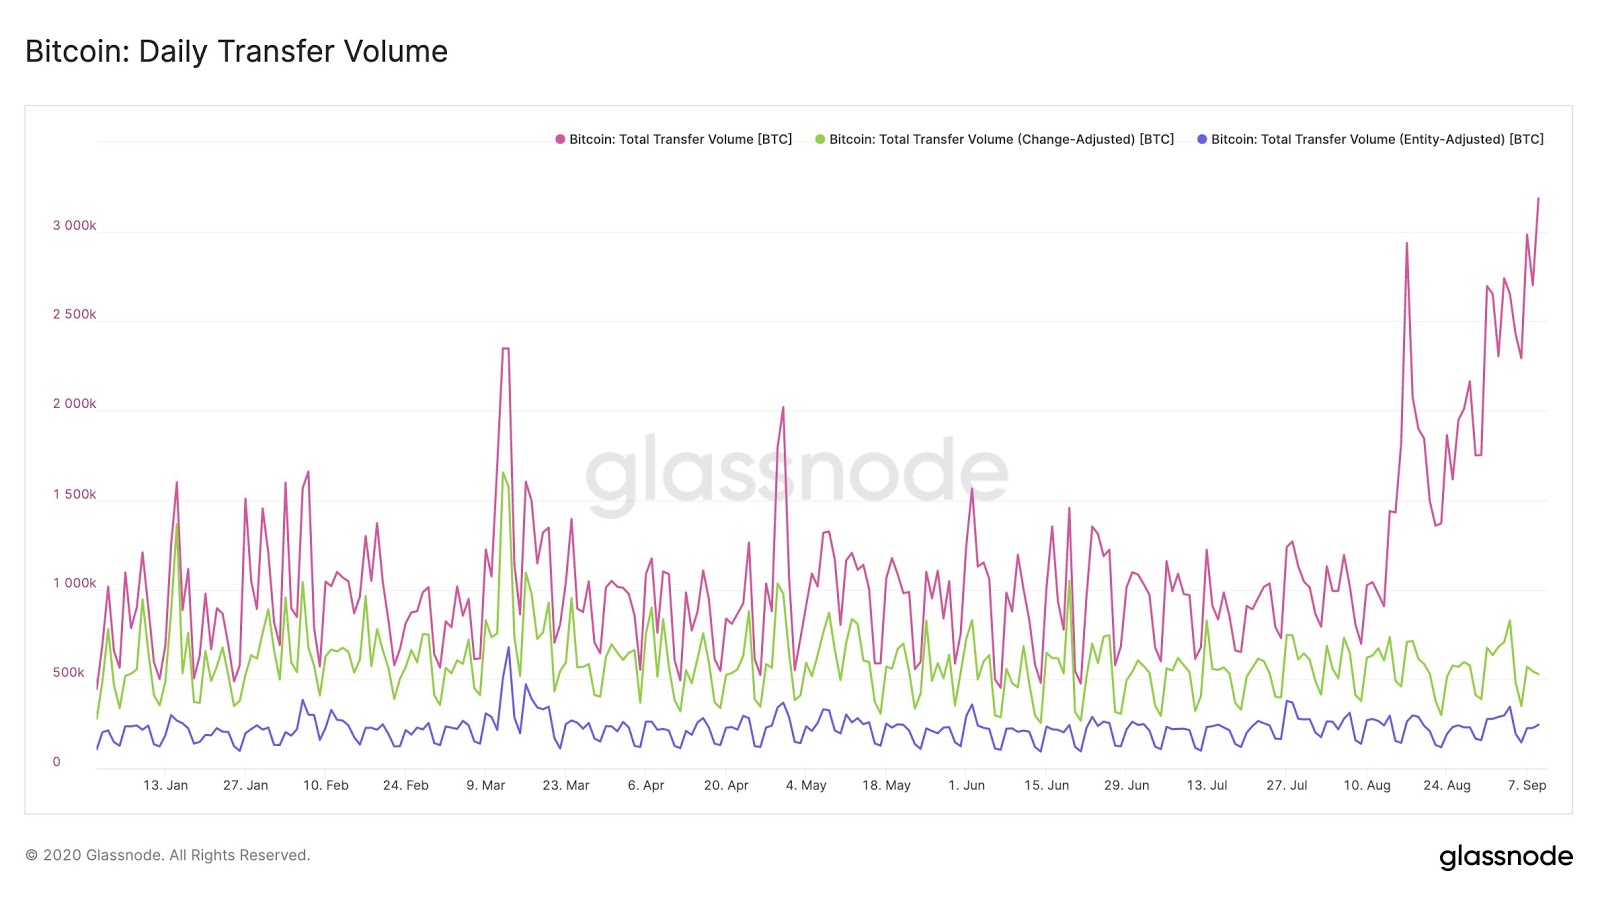 Change-adjusted daily transfer volume shows flat volume. Source: Glassnode